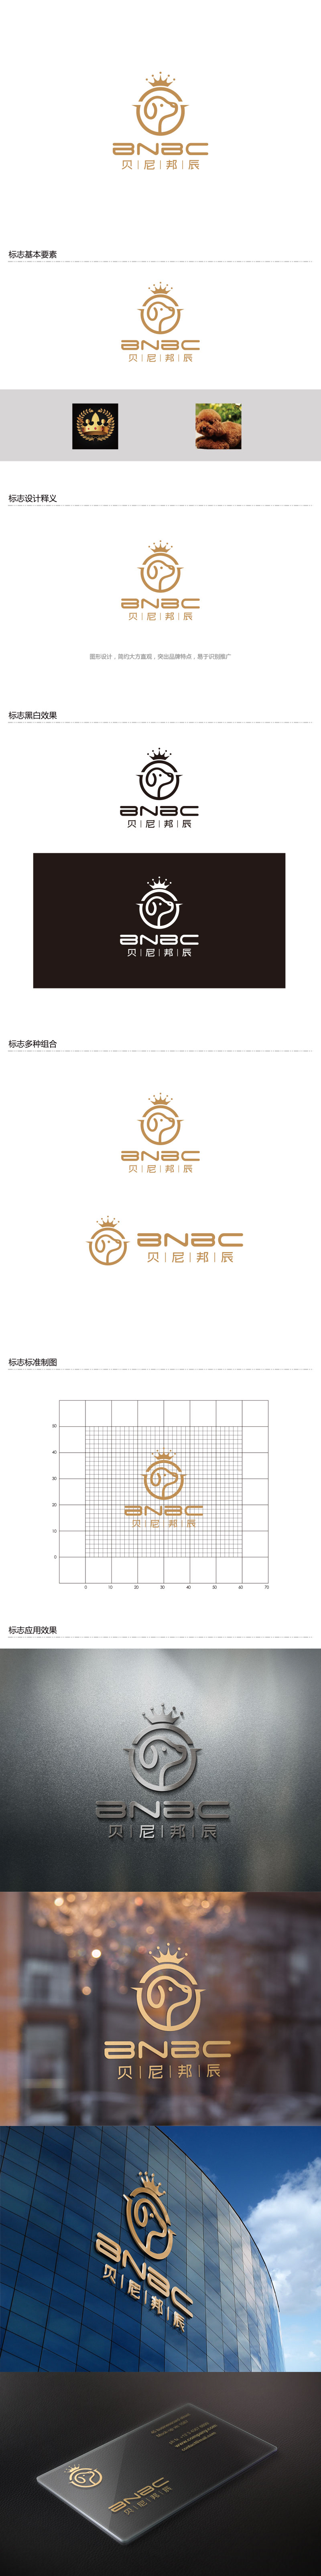 孙金泽的贝尼邦辰logo设计